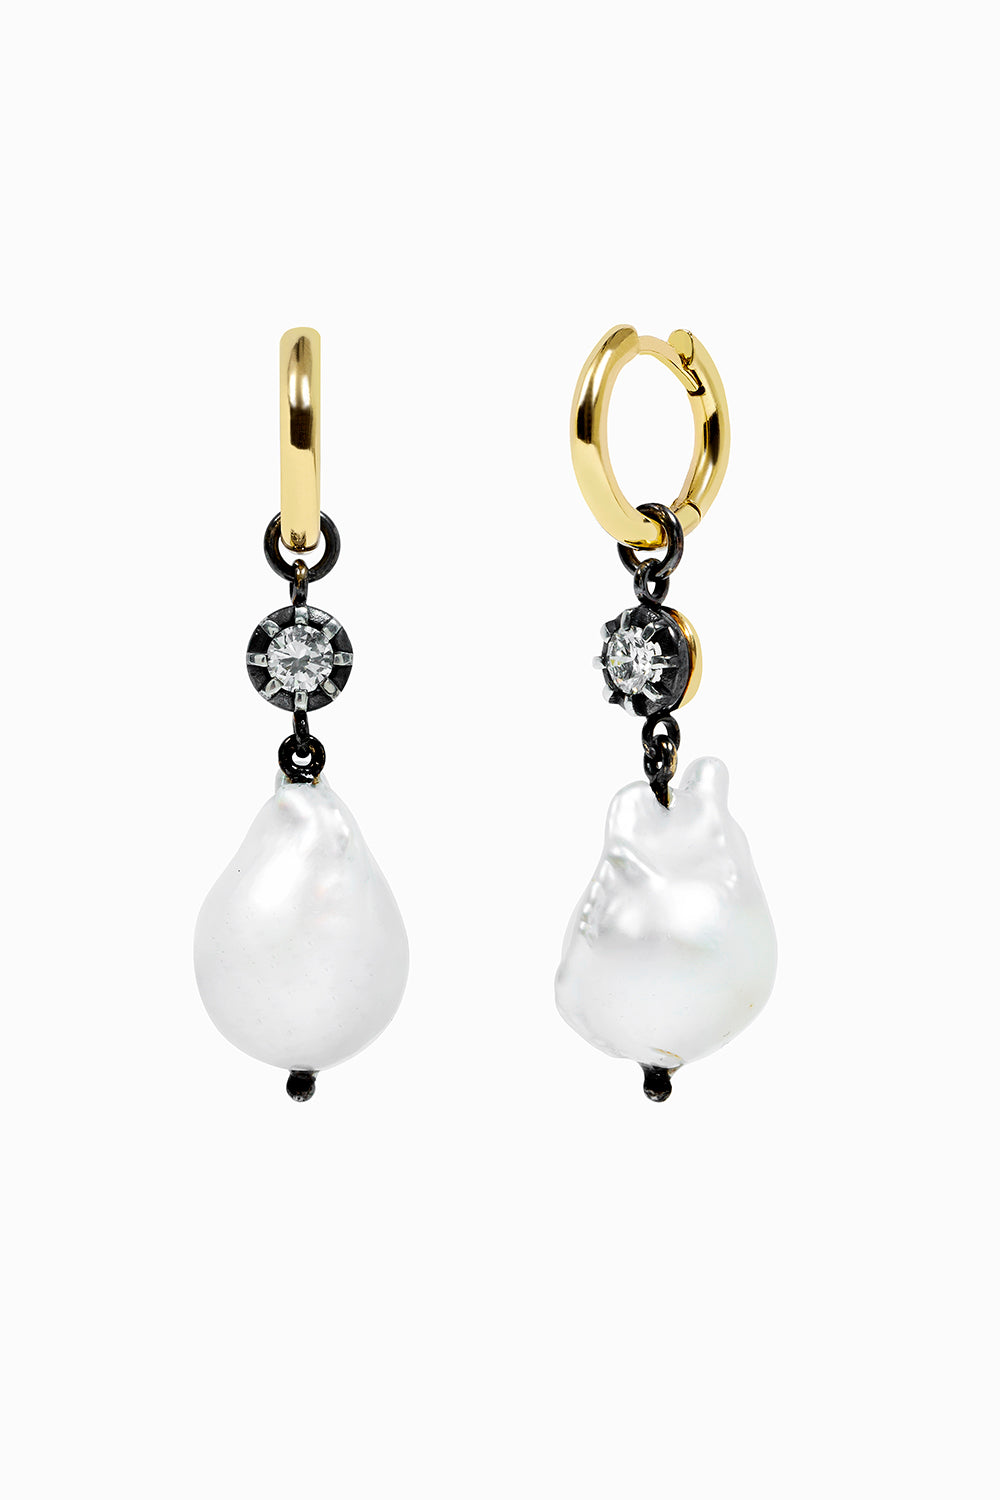 Midnight & Pearls hoop earrings